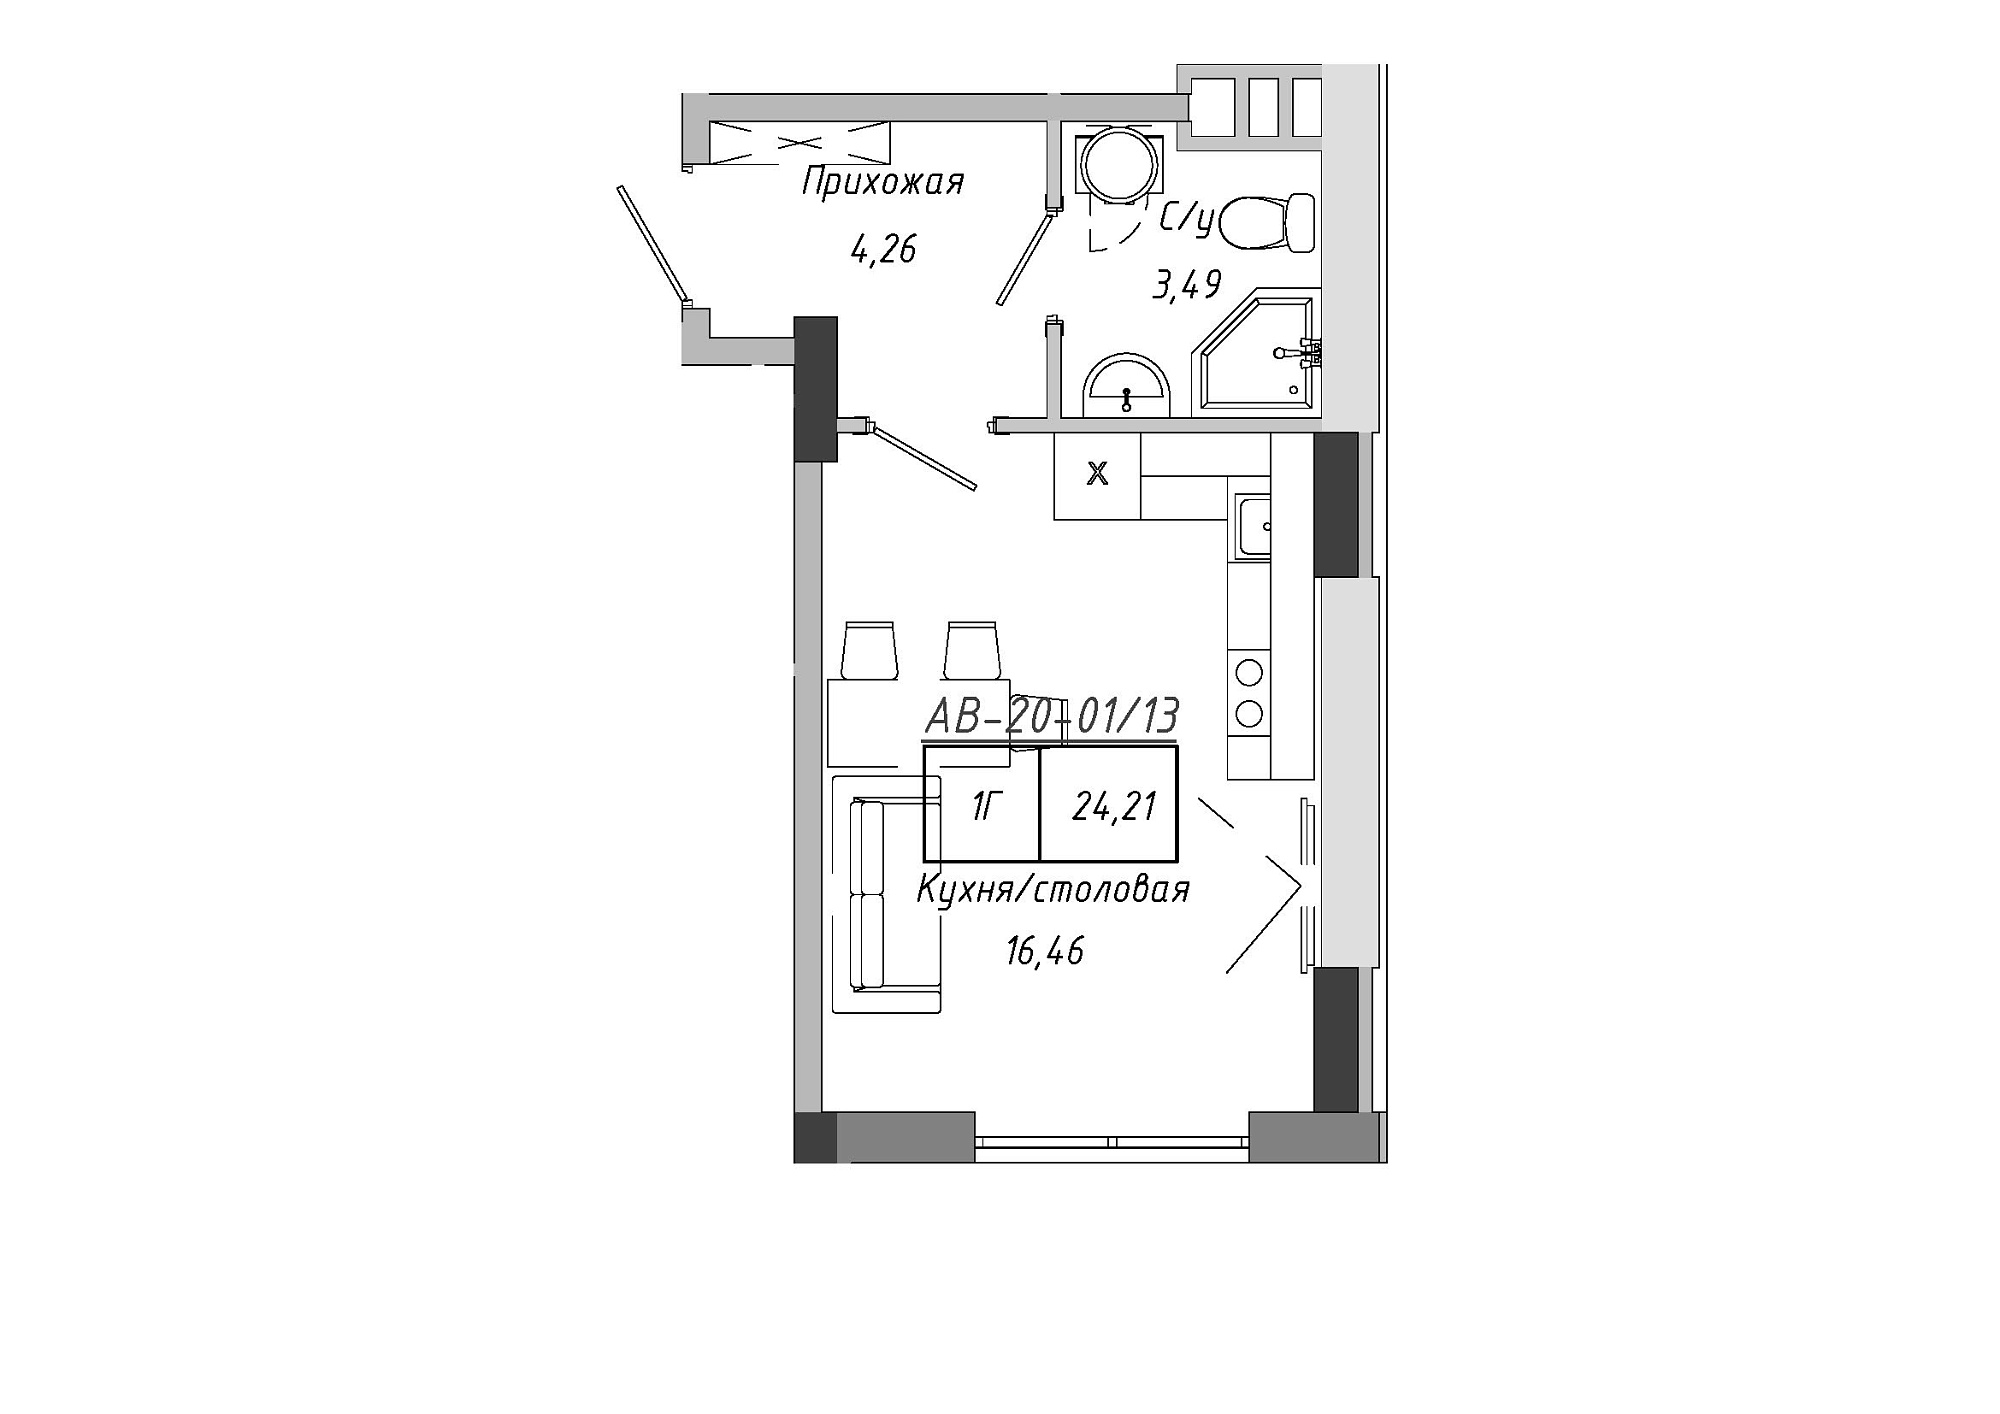 Планування Smart-квартира площею 24.21м2, AB-20-01/00013.